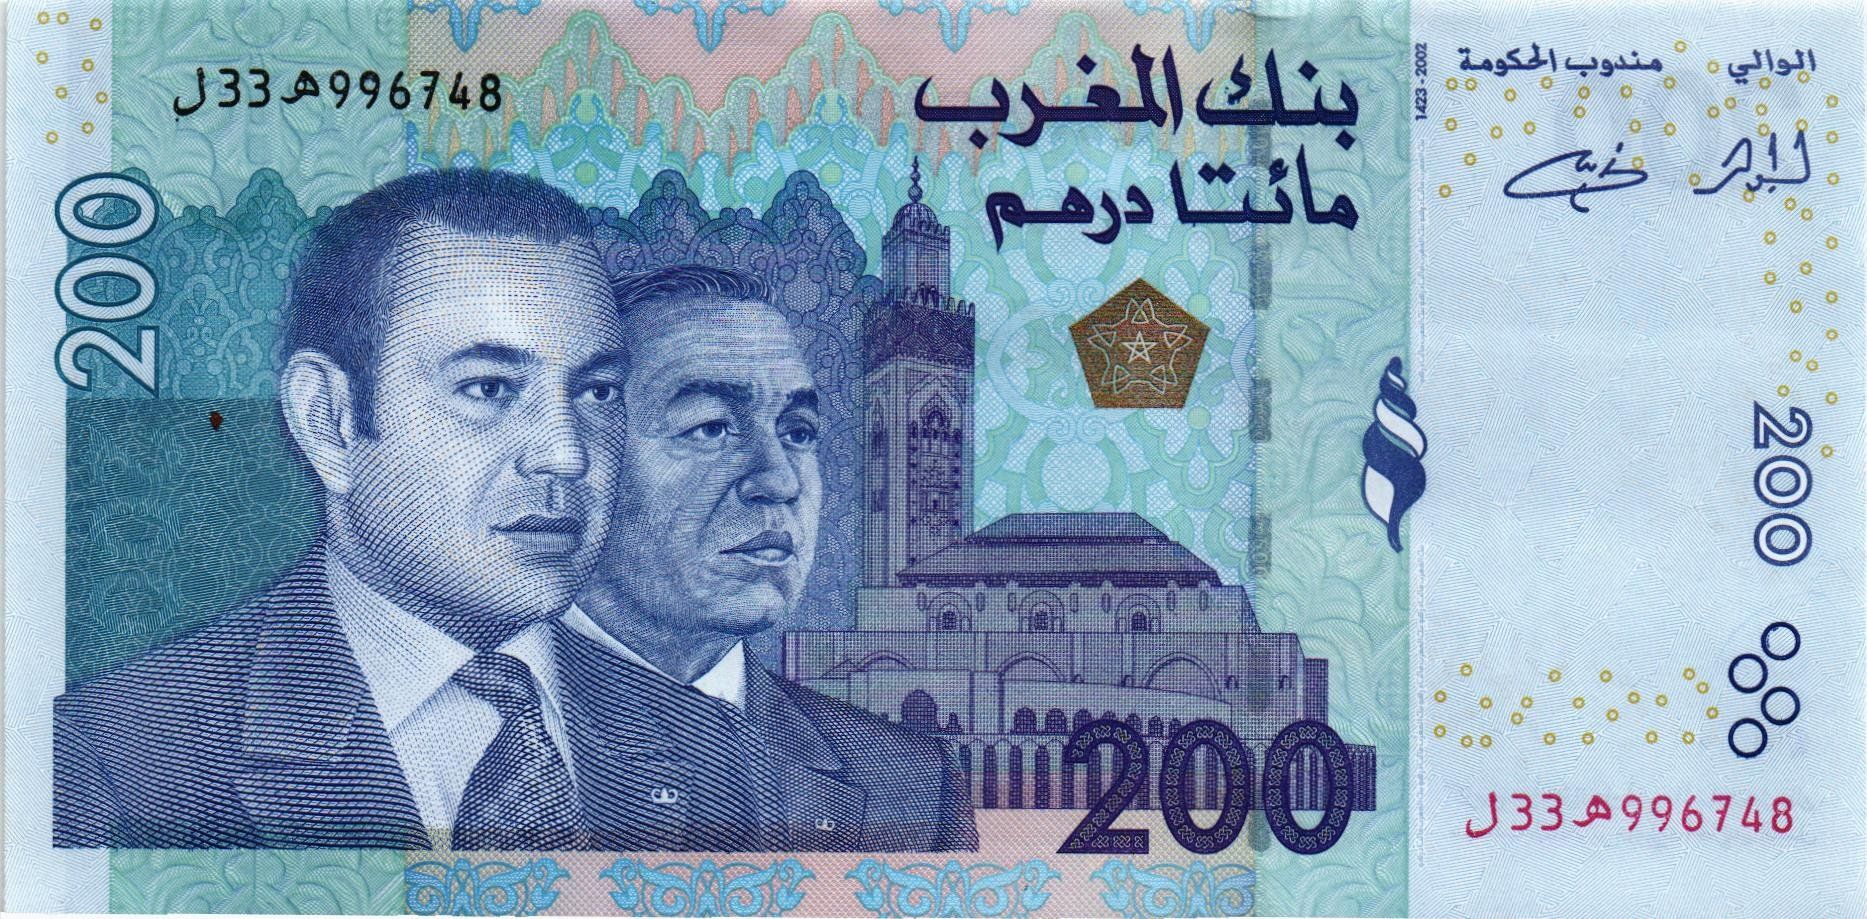 17200 дирхам. Купюры Марокко. Марокканские дирхамы. 200 Dirhams. Валюта Марокко.